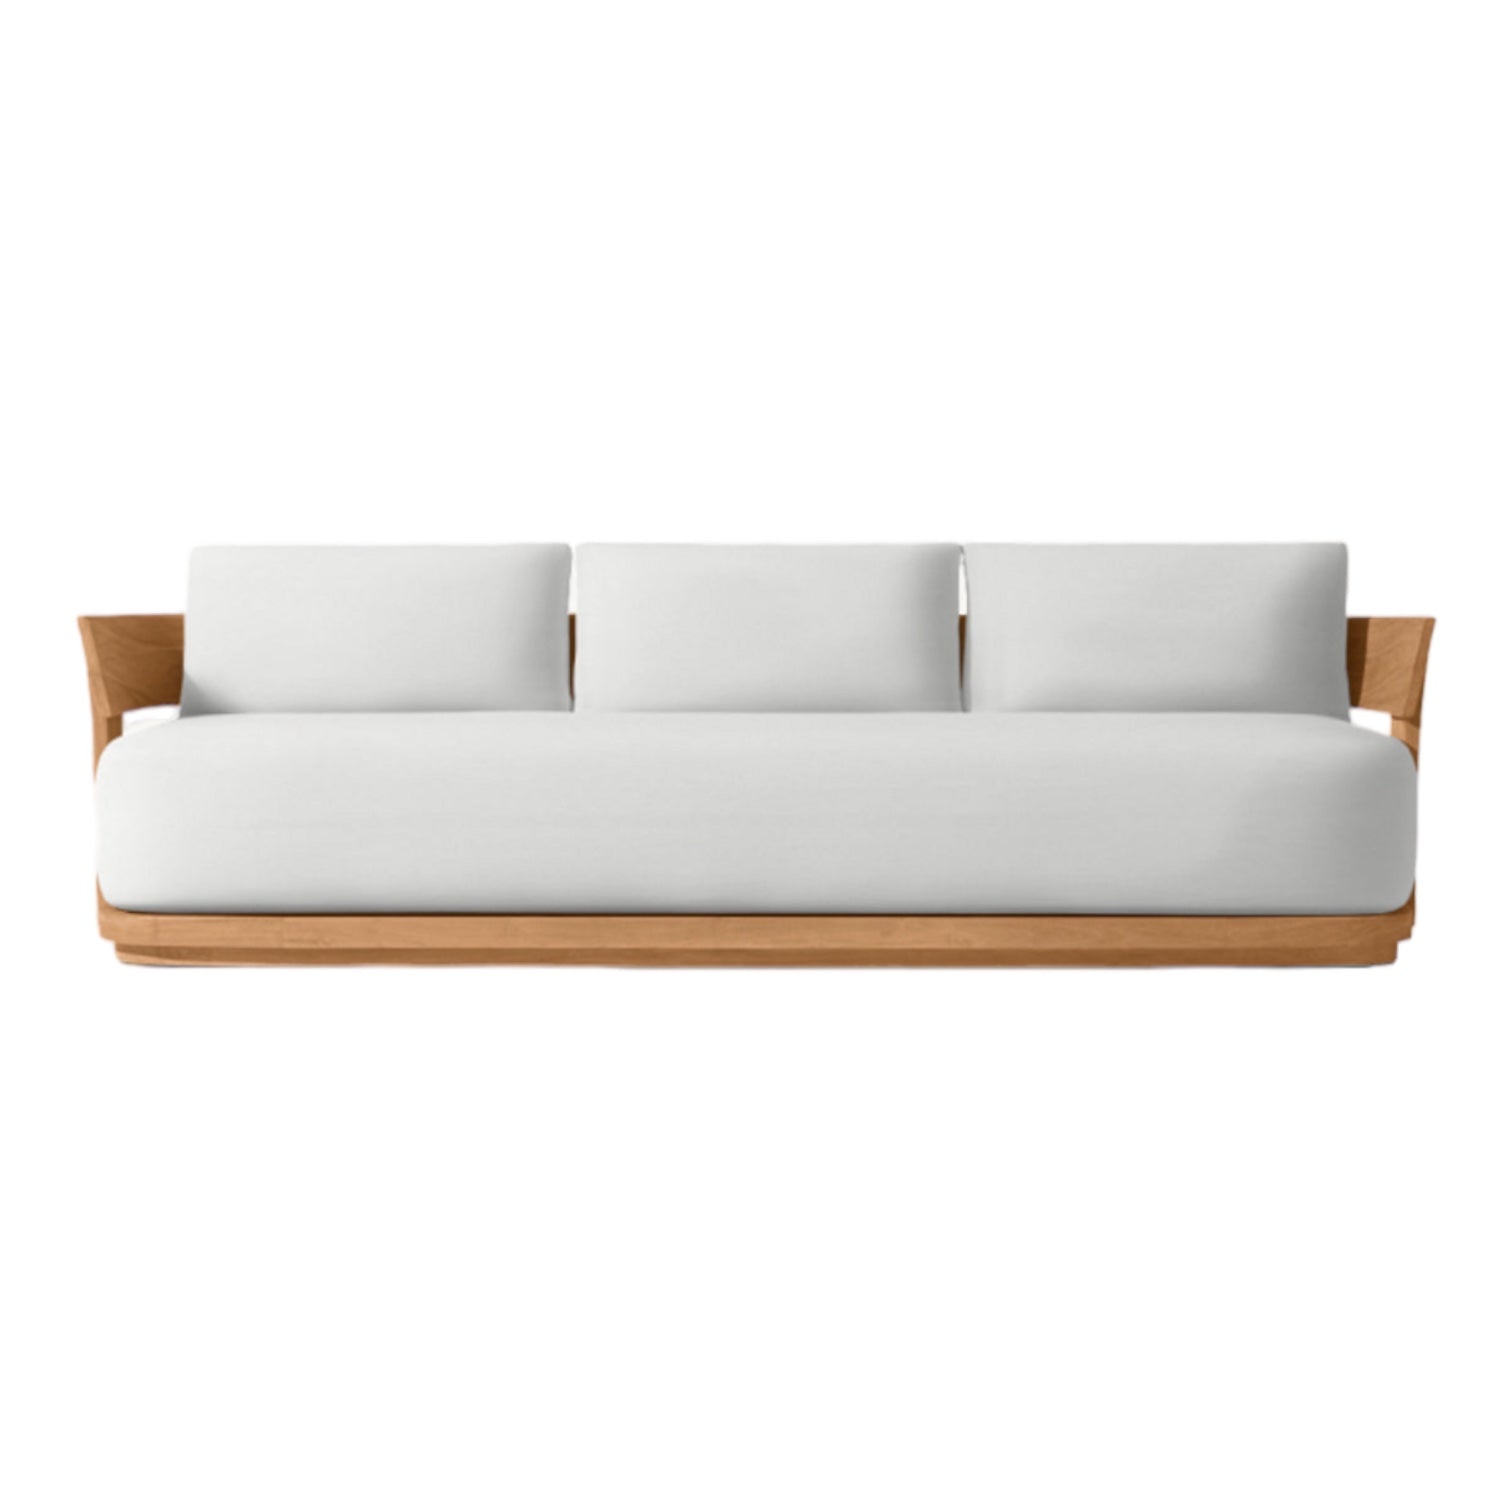 Luxury Teak “Celona” Outdoor Straight Sofa